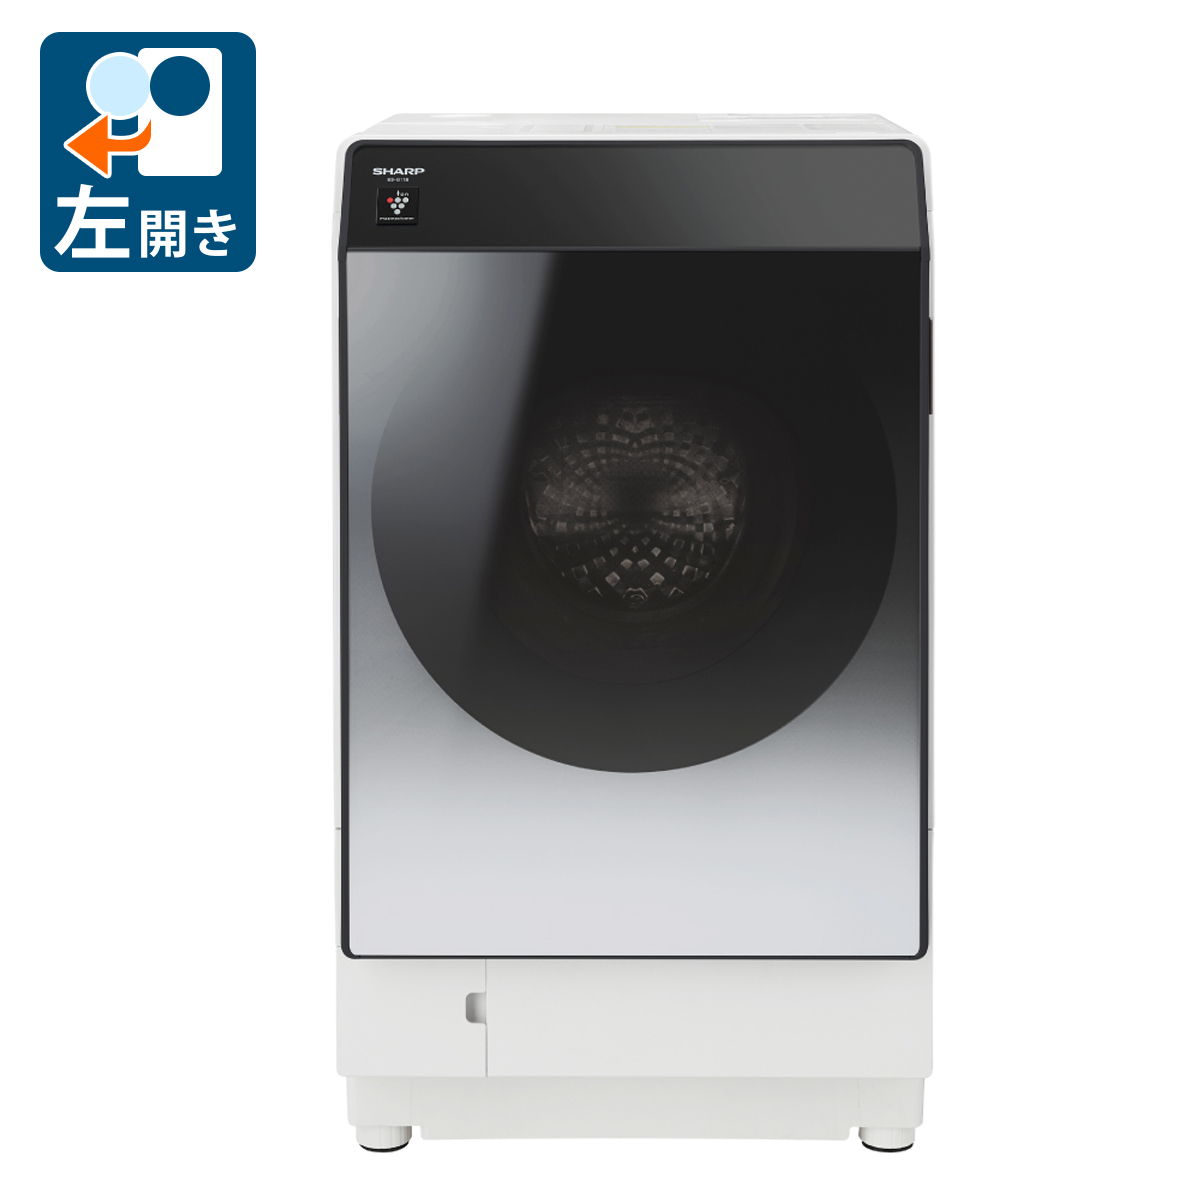 プラズマクラスター ドラム式洗濯乾燥機 左開き ES-G11B-S （シルバー系）の商品画像